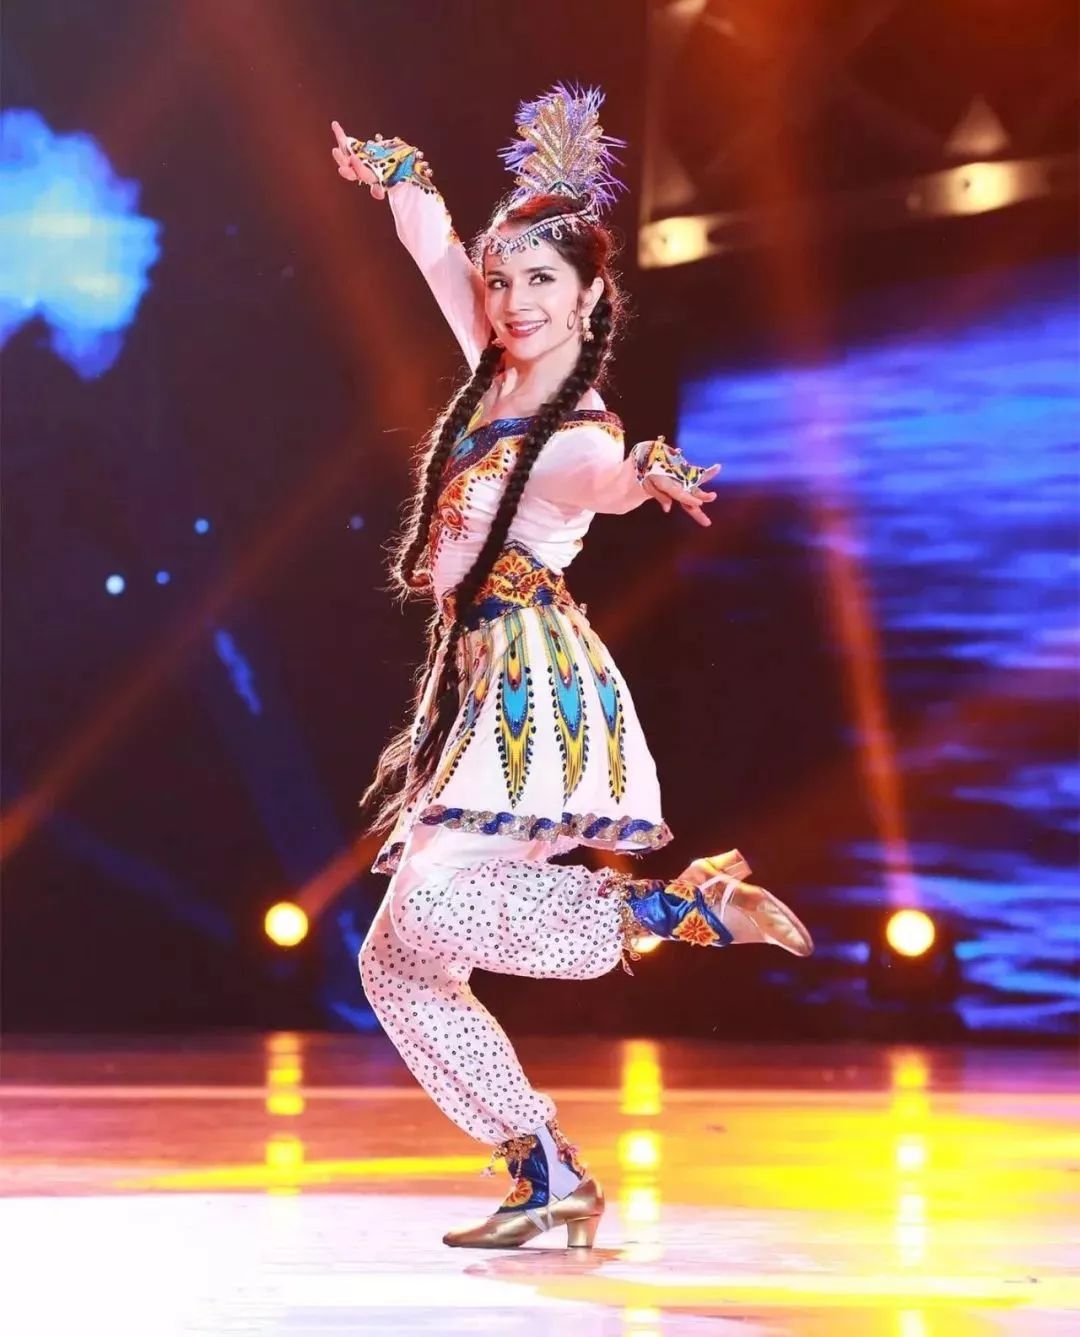 中国好舞蹈第二季冠军图片